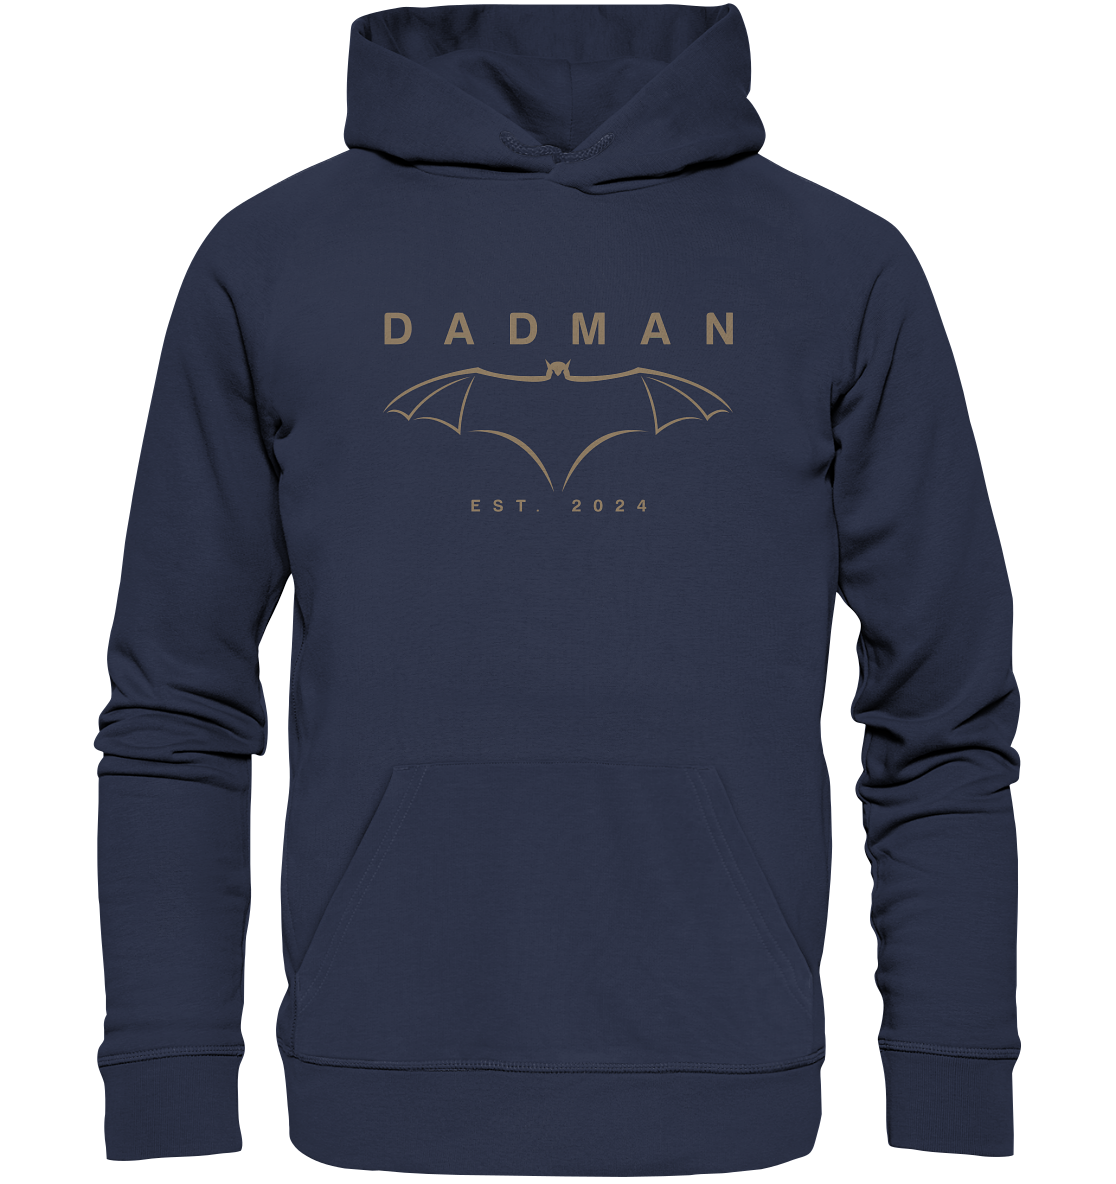 Dadman Modern Edition  - Premium Unisex Hoodie